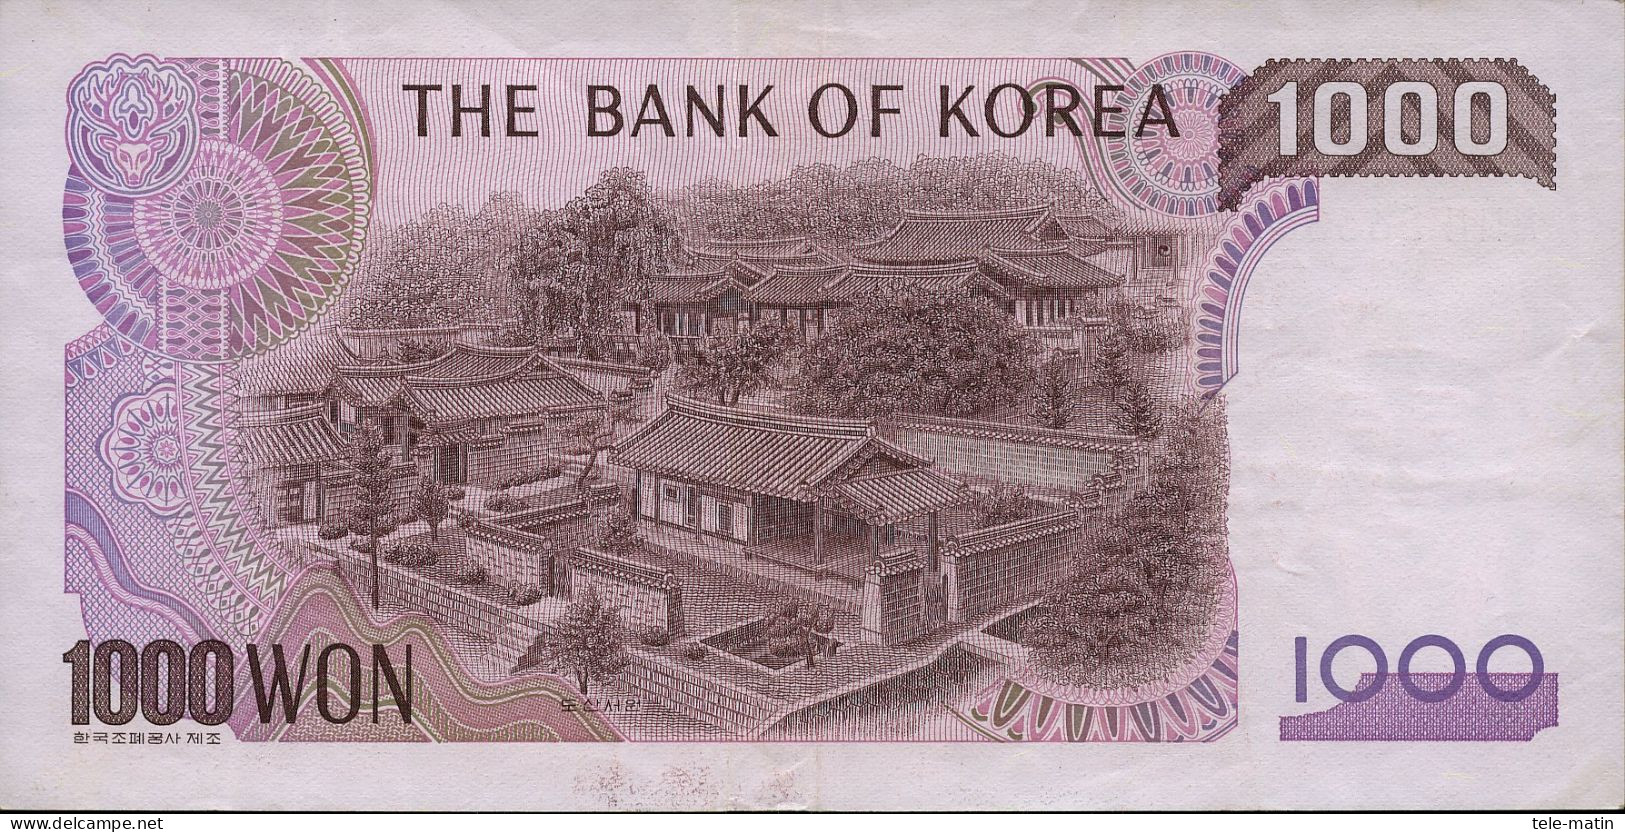 5 billets de la Corée du Sud